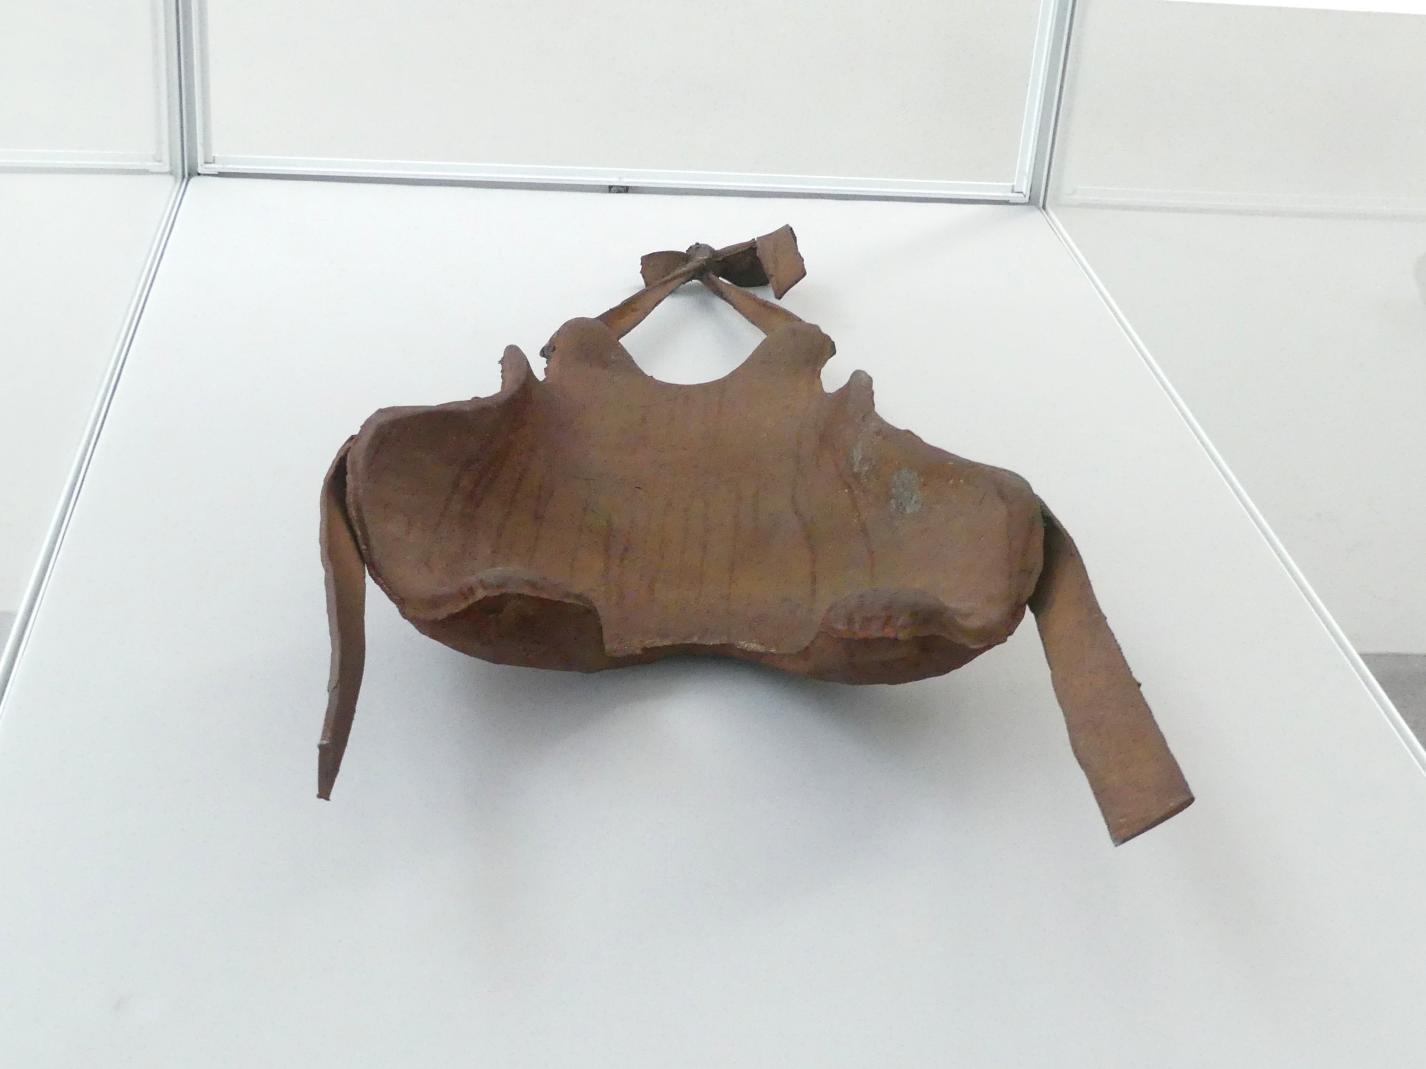 Joseph Beuys (1948–1985), Rückenstütze eines feingliedrigen Menschen (Hasentypus) aus dem 20. Jahrhundert p. Chr., München, Pinakothek der Moderne, Saal 19, 1972